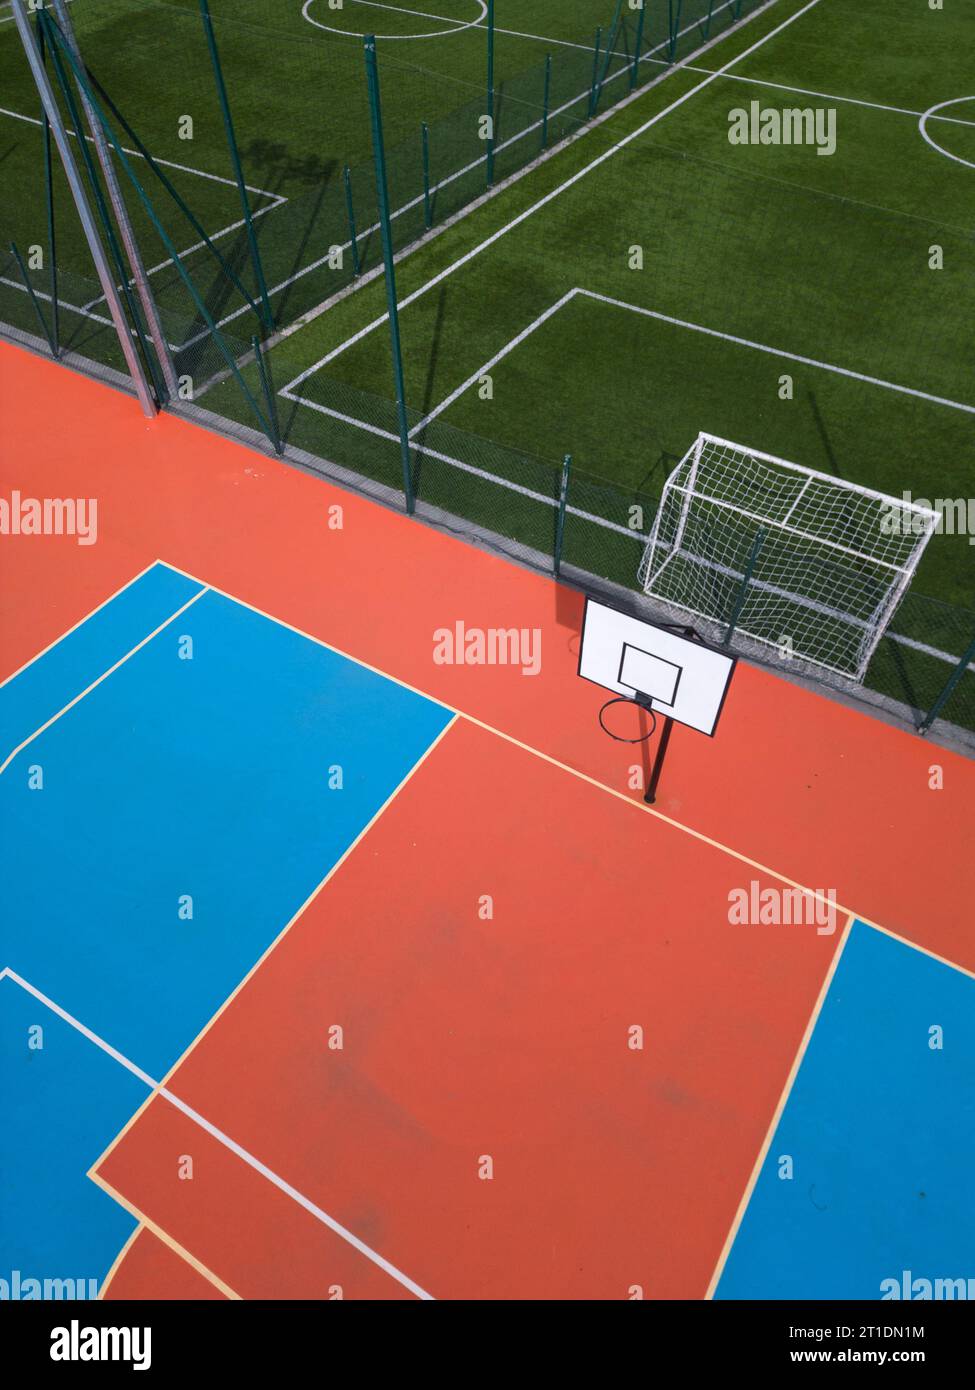 Aus der Vogelperspektive auf ein grünes Fußballfeld und einen farbenfrohen Basketballplatz, der einen Blick auf zwei verschiedene Sporteinrichtungen nebeneinander bietet. Das Gegenteil Stockfoto